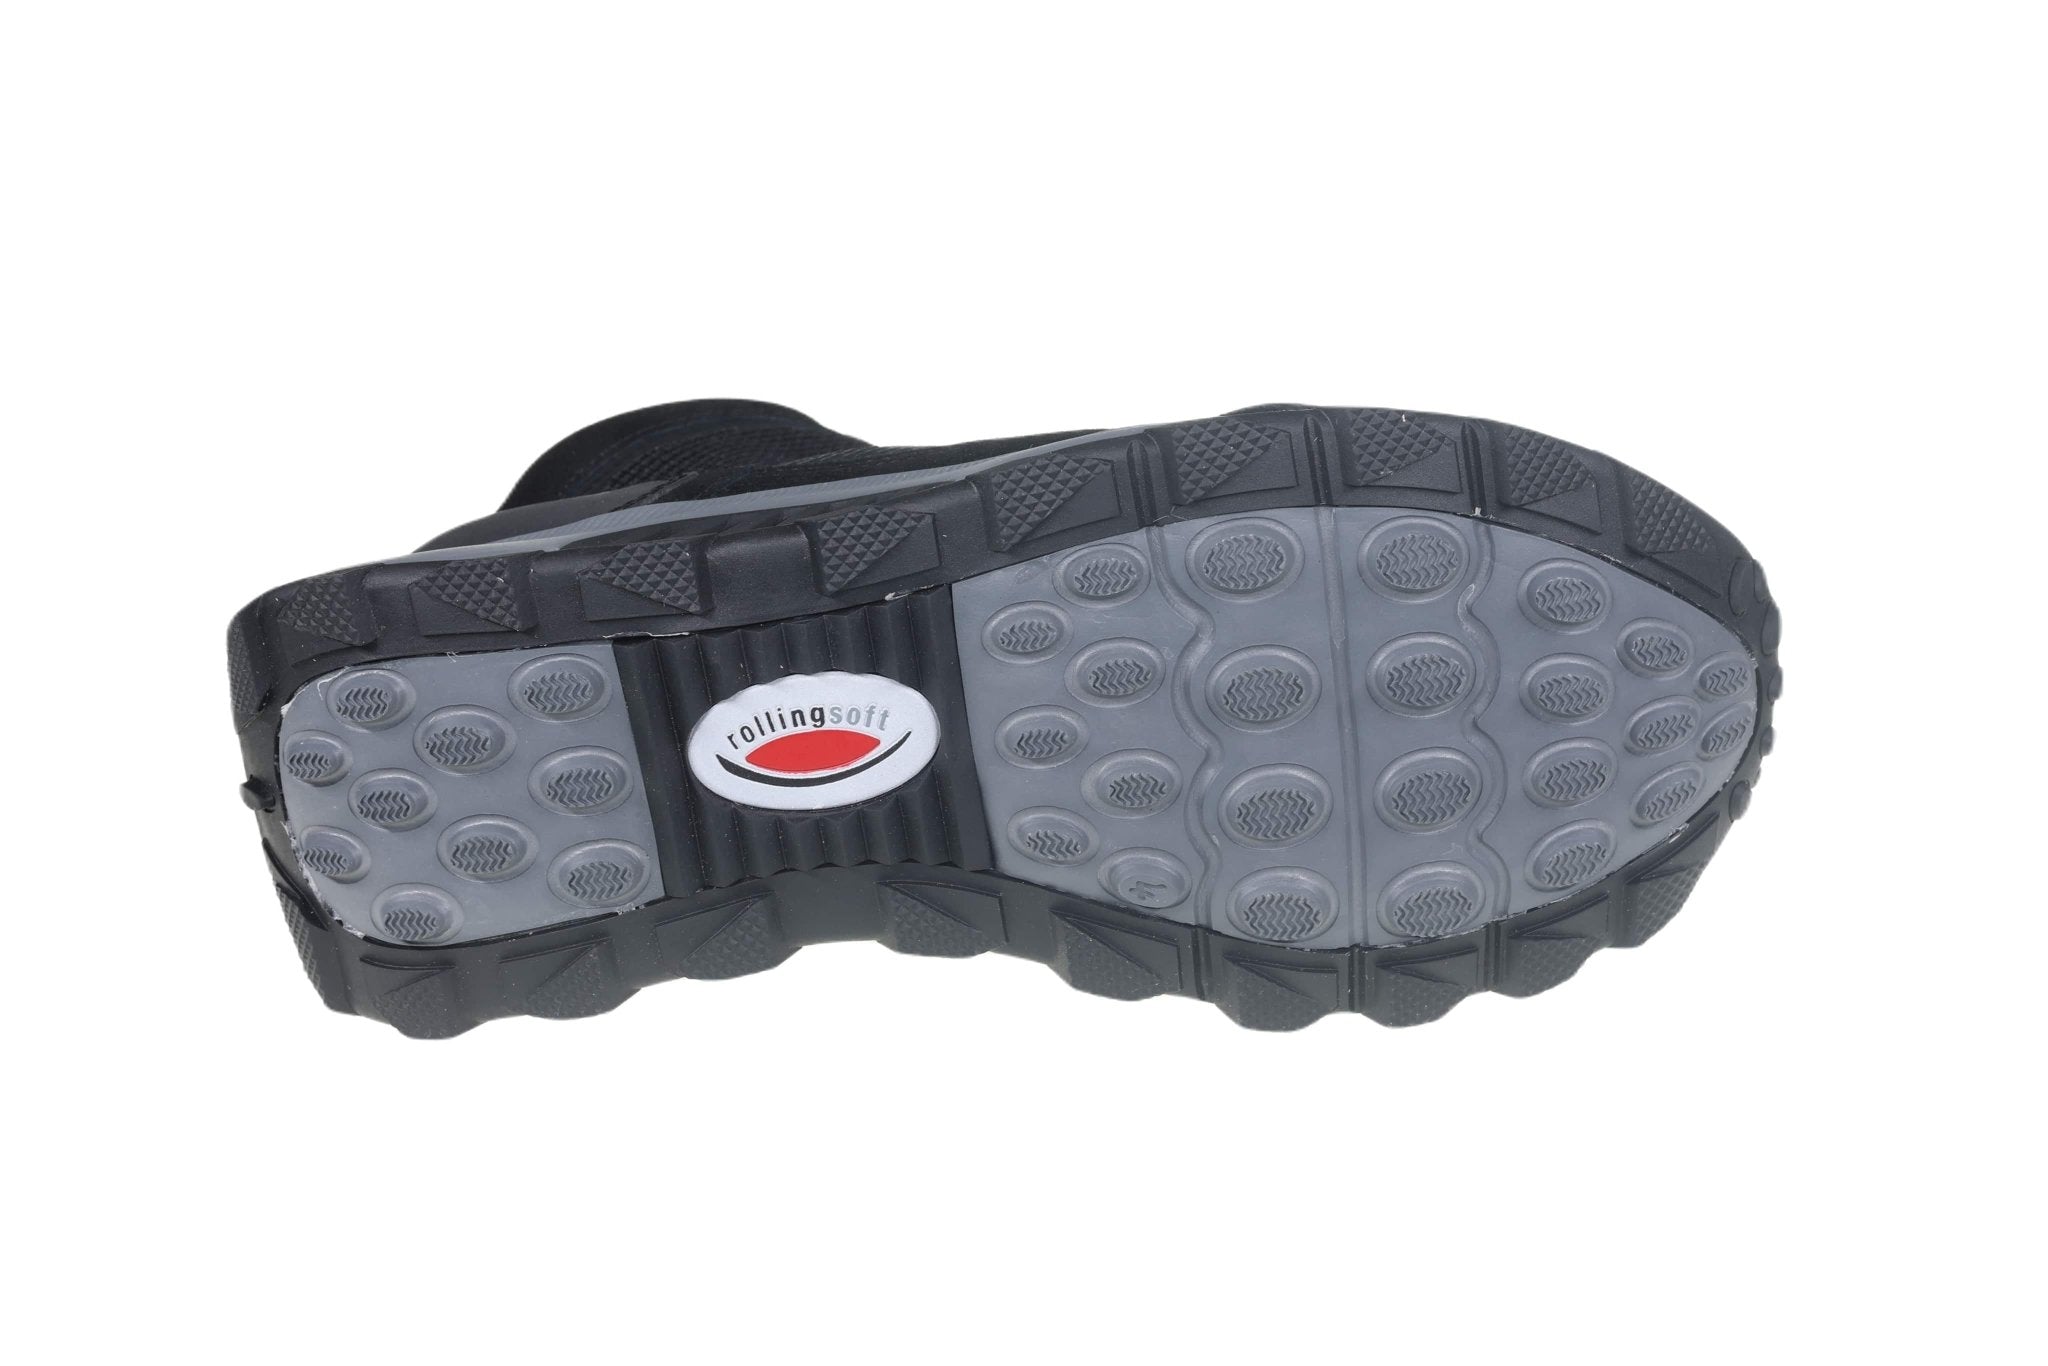 '96.876.47' women's waterproof boot - Black combi - Chaplinshoes'96.876.47' women's waterproof boot - Black combiGabor